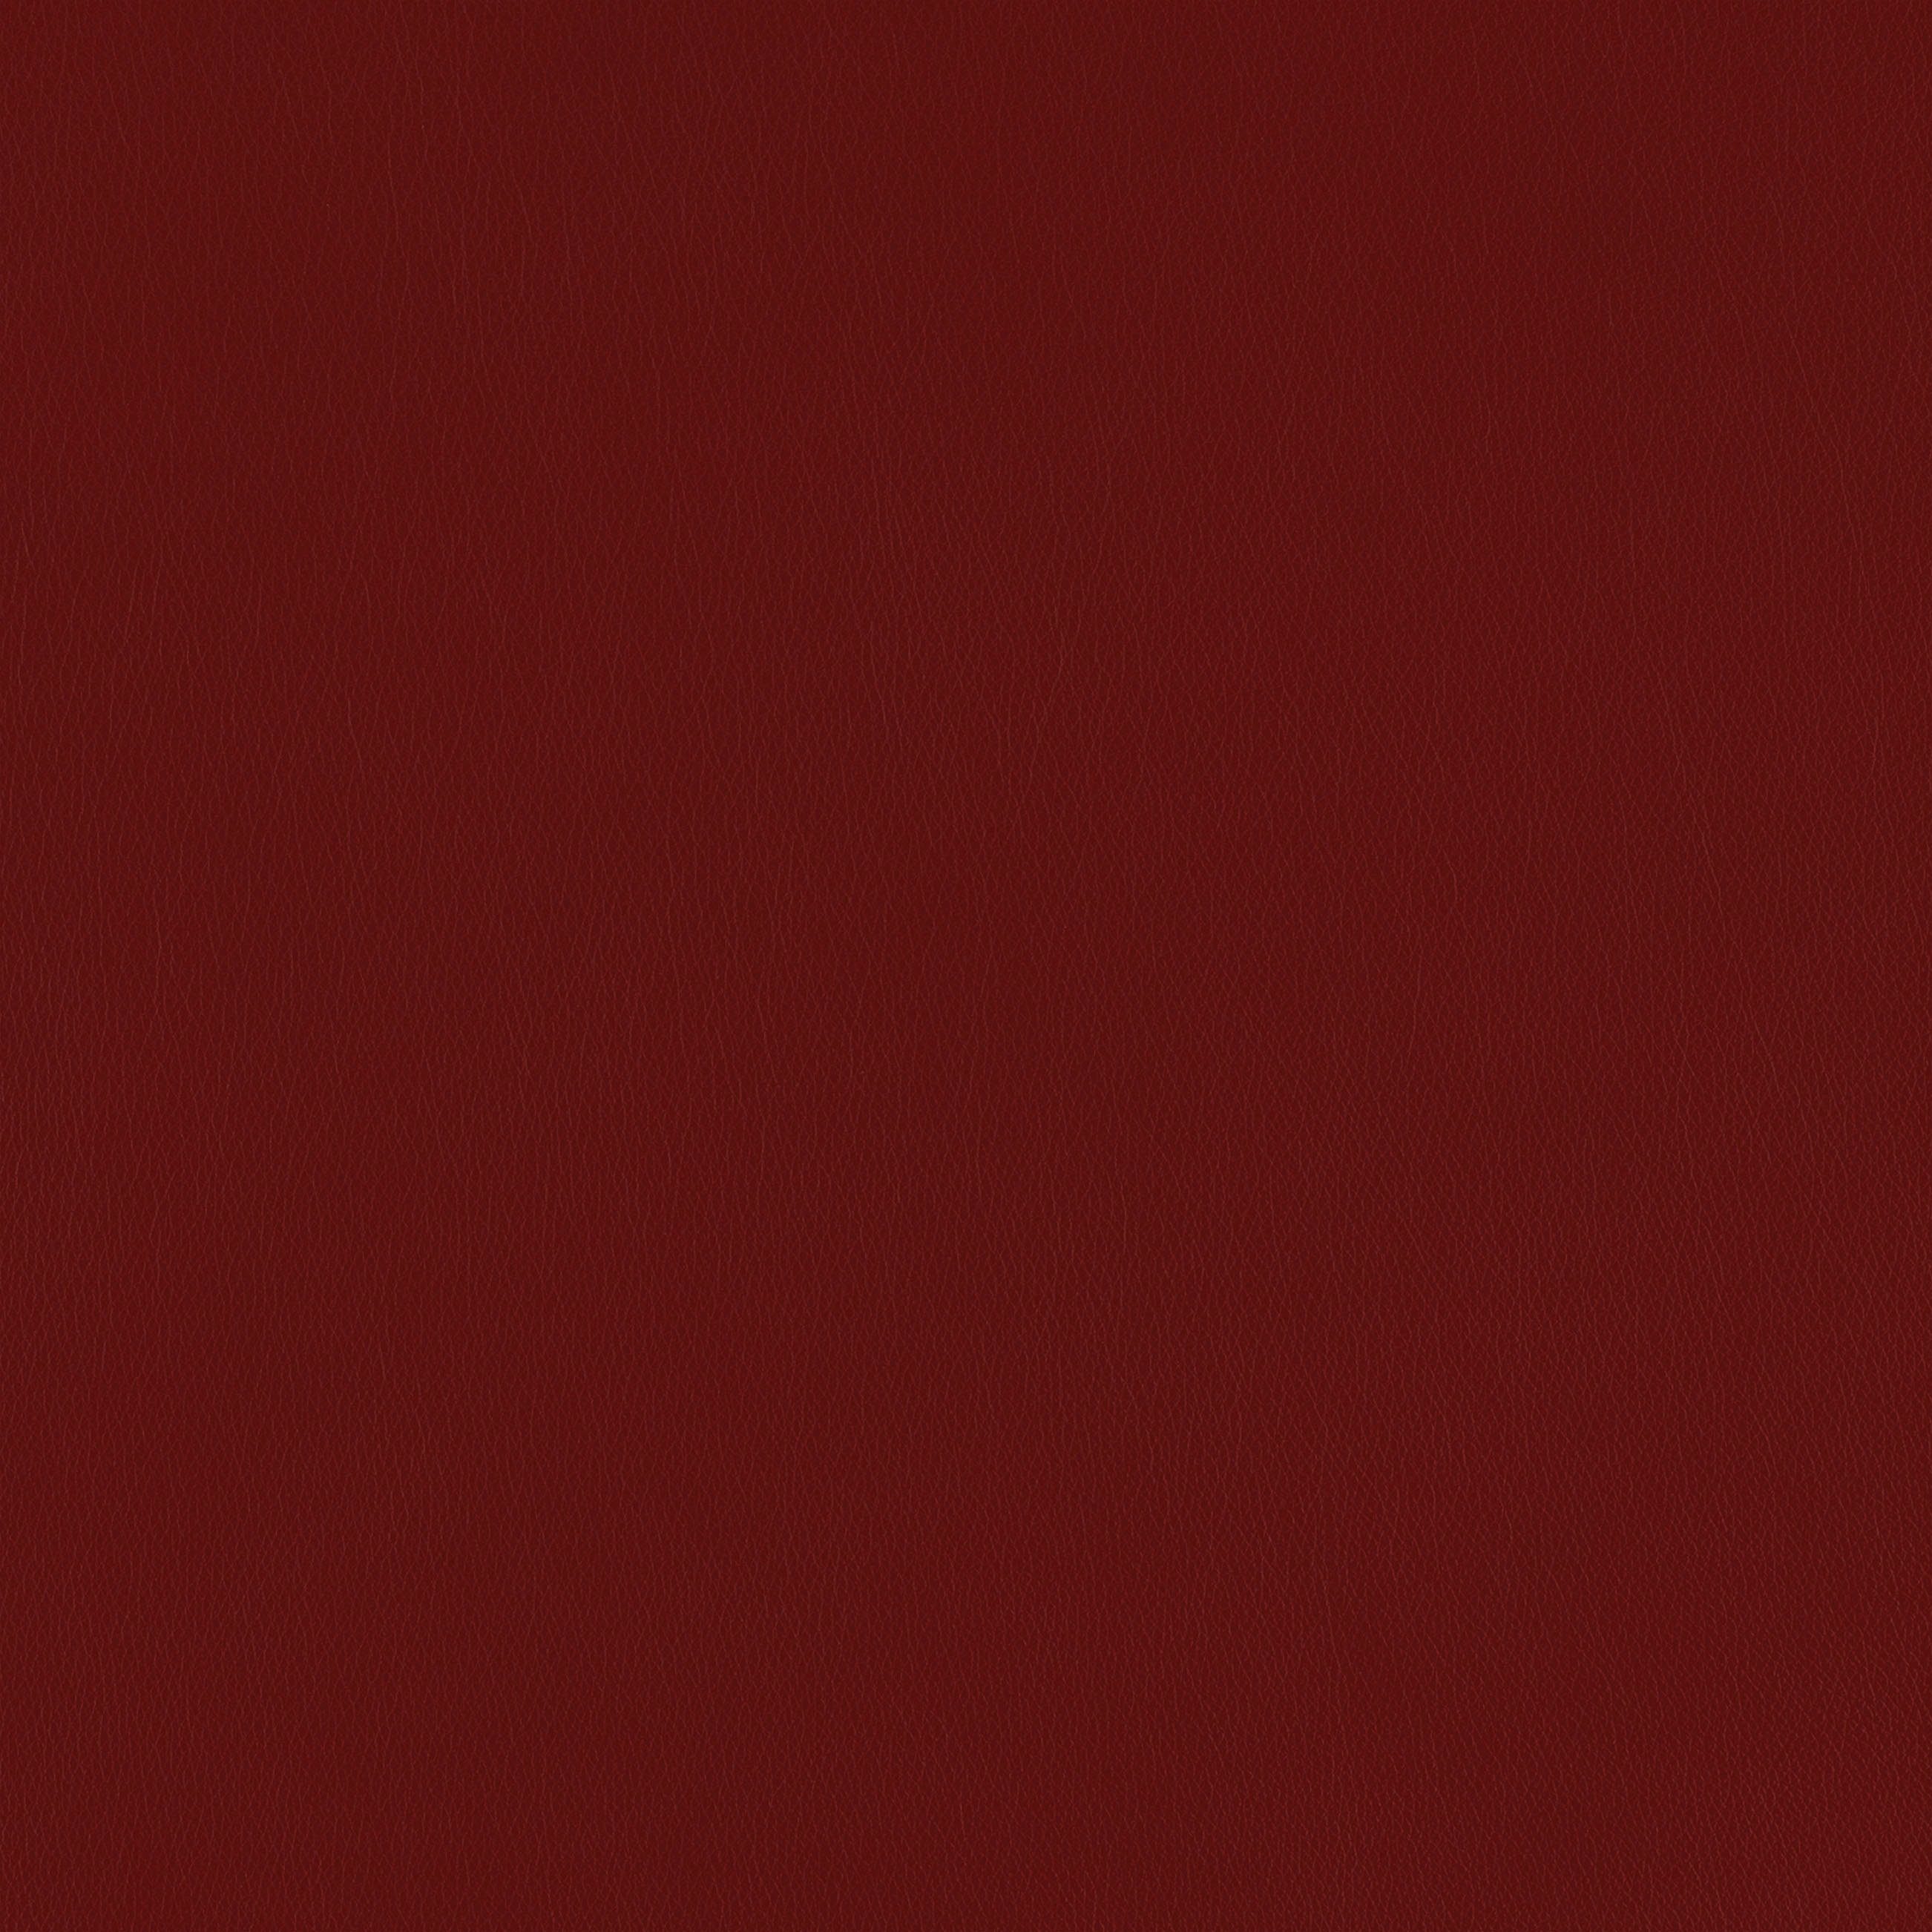 W.SCHILLIG 3-Sitzer red Z59 ruby taboo, mit Normaltiefe, Kontrastnaht Armlehnenverstellung, mit inklusive